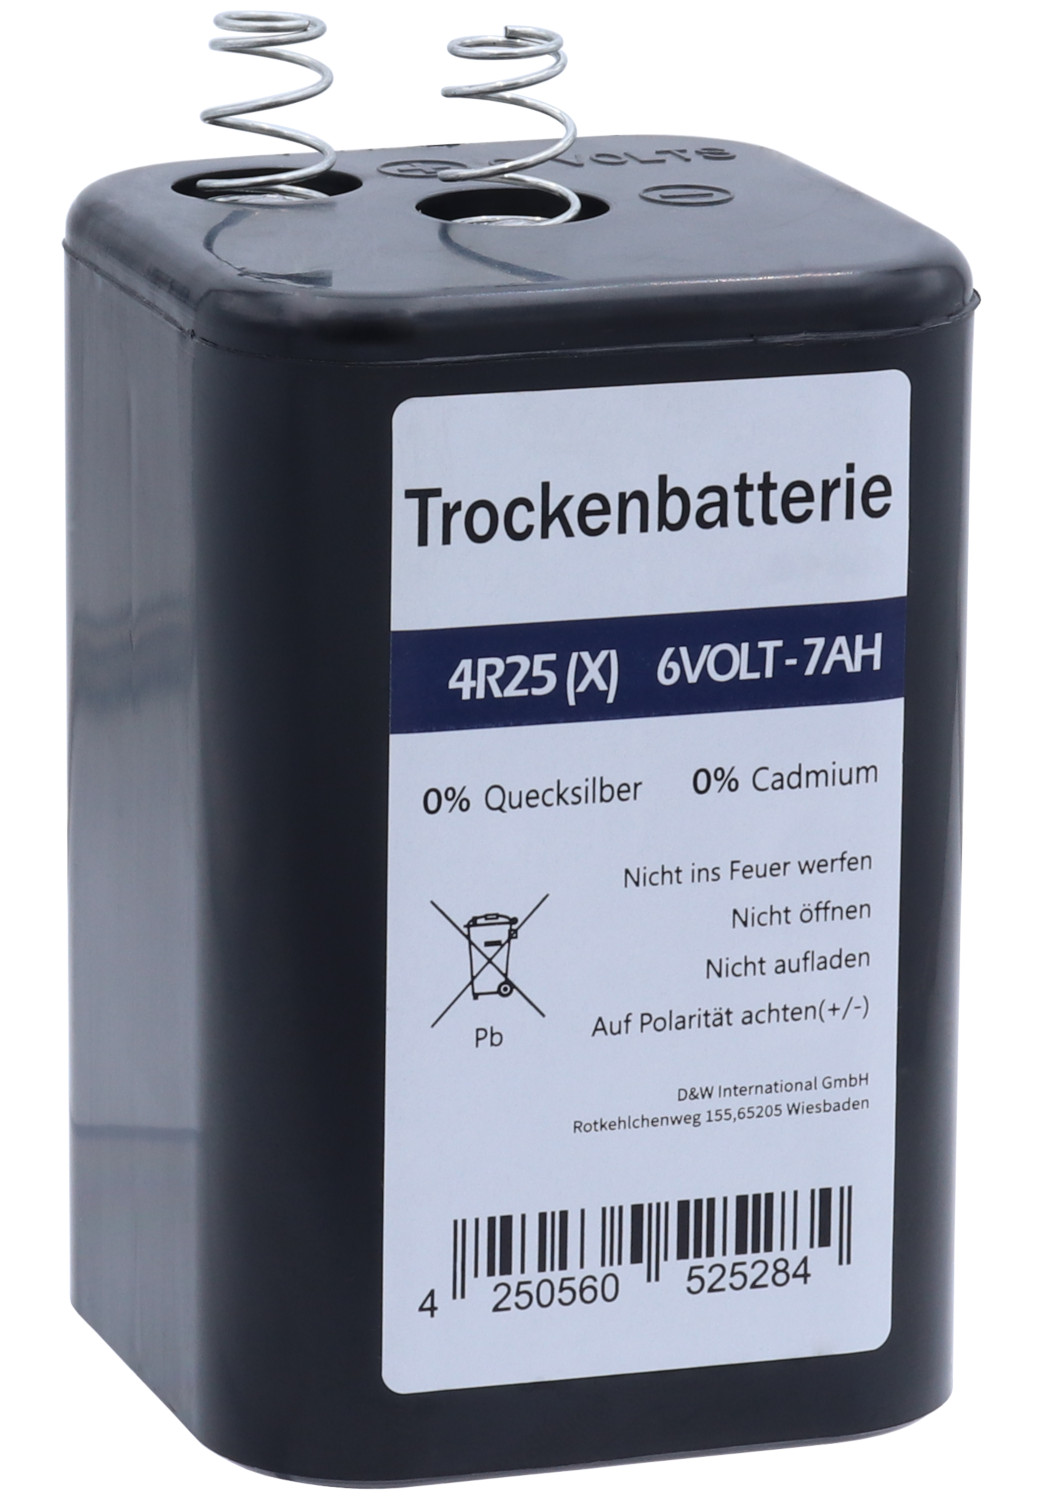 Blockbatterie 4R25 (6V, 7Ah), Zink-Kohle, Hochleistungs